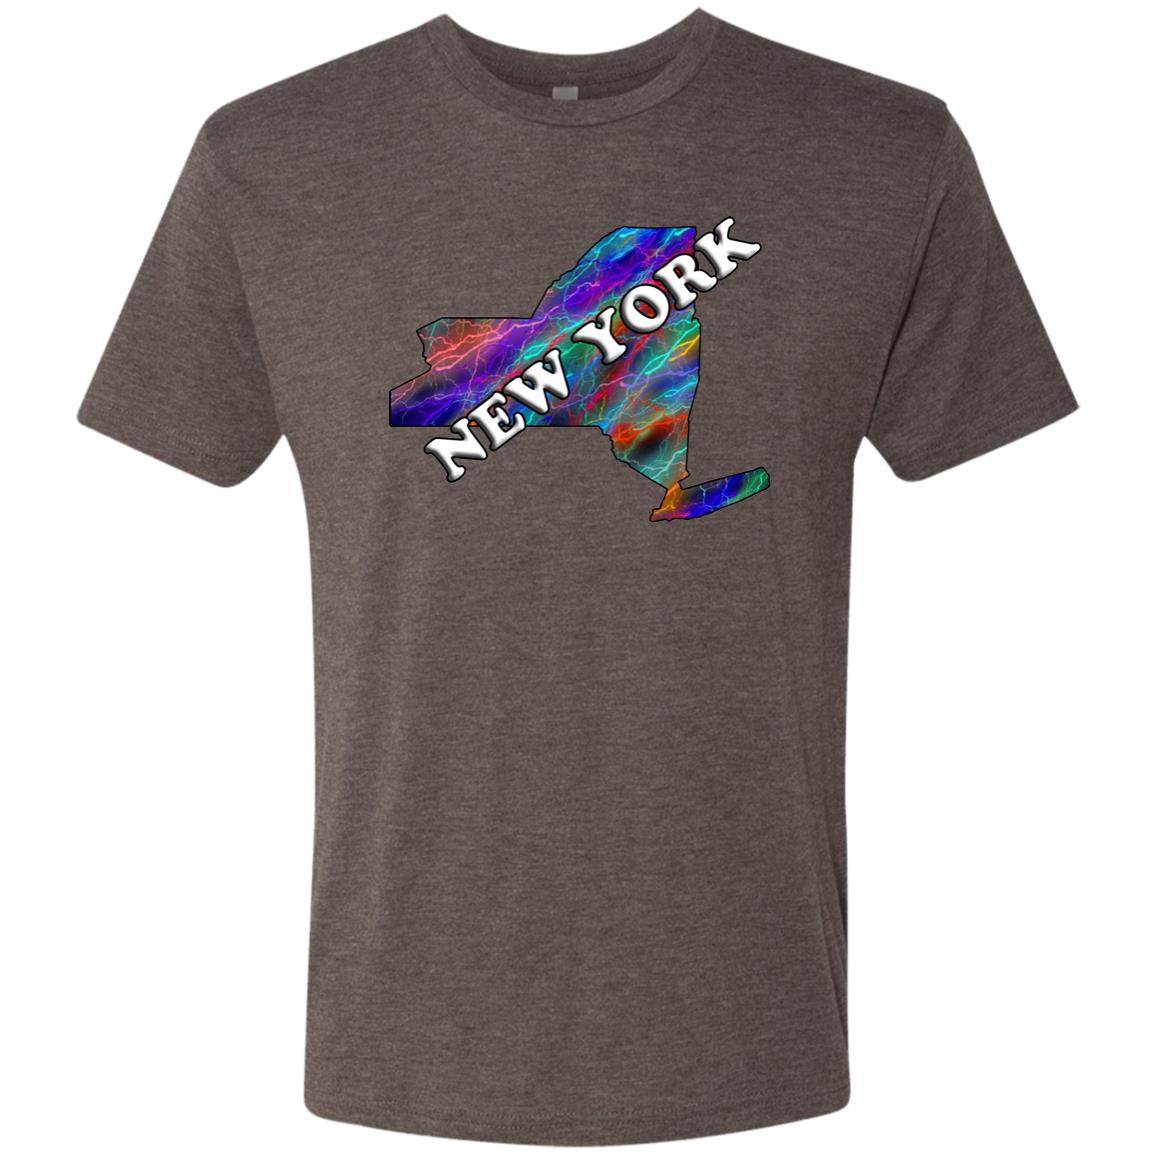 New York State T-Shirt